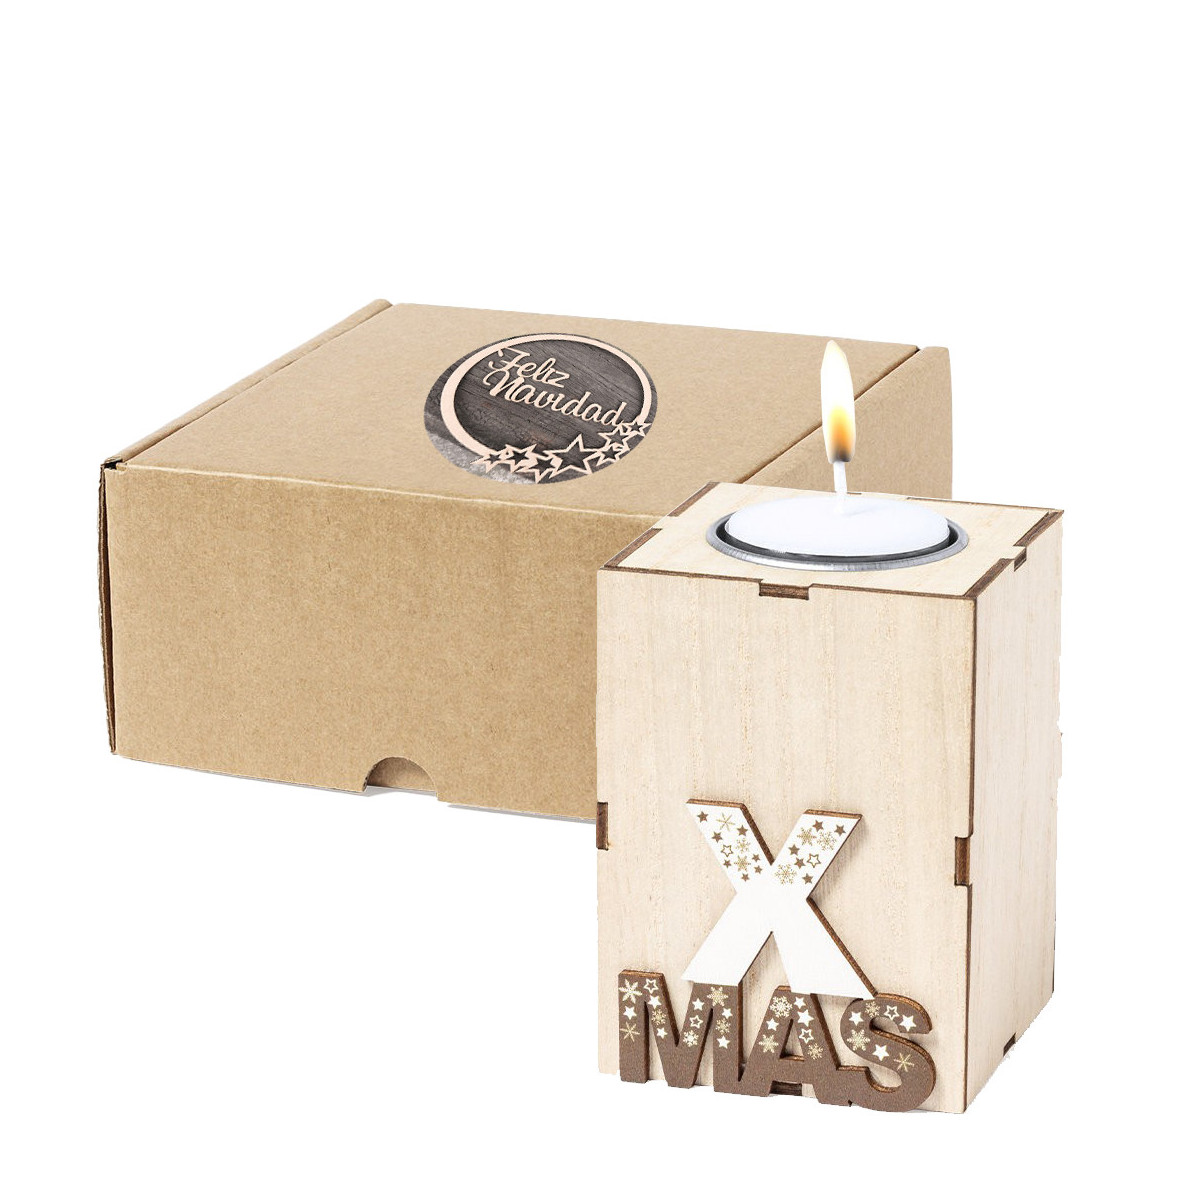 Portavela de navidad en madera presentada en caja de cartón color marrón con adhesivo de imagen